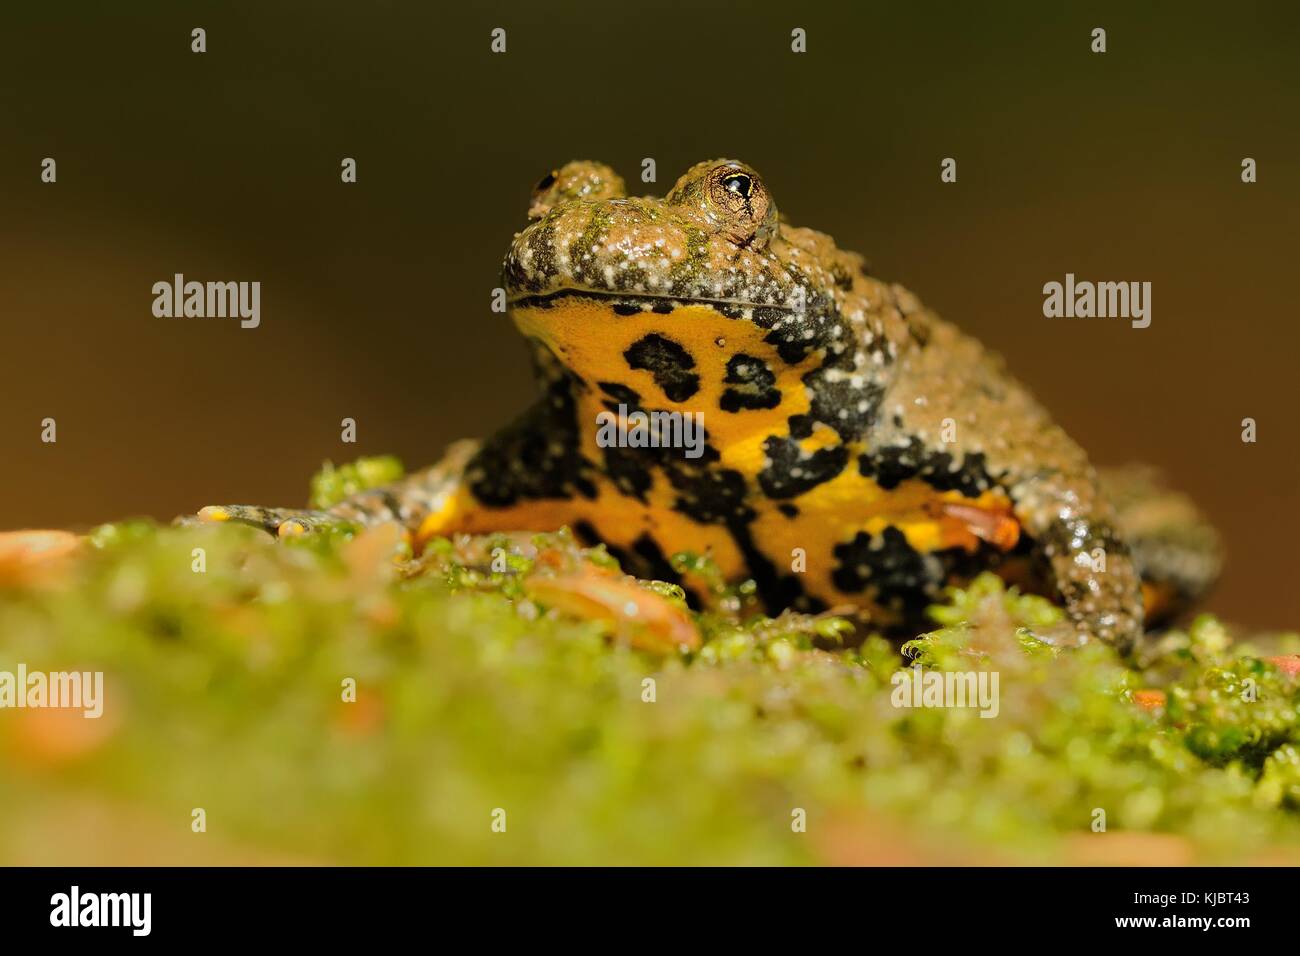 Die gelbbauchunke (Bombina variegata) auf den grünen Moos. Braun Frosch mit gelben Bauch mit grünen und braunen backgroun. Stockfoto